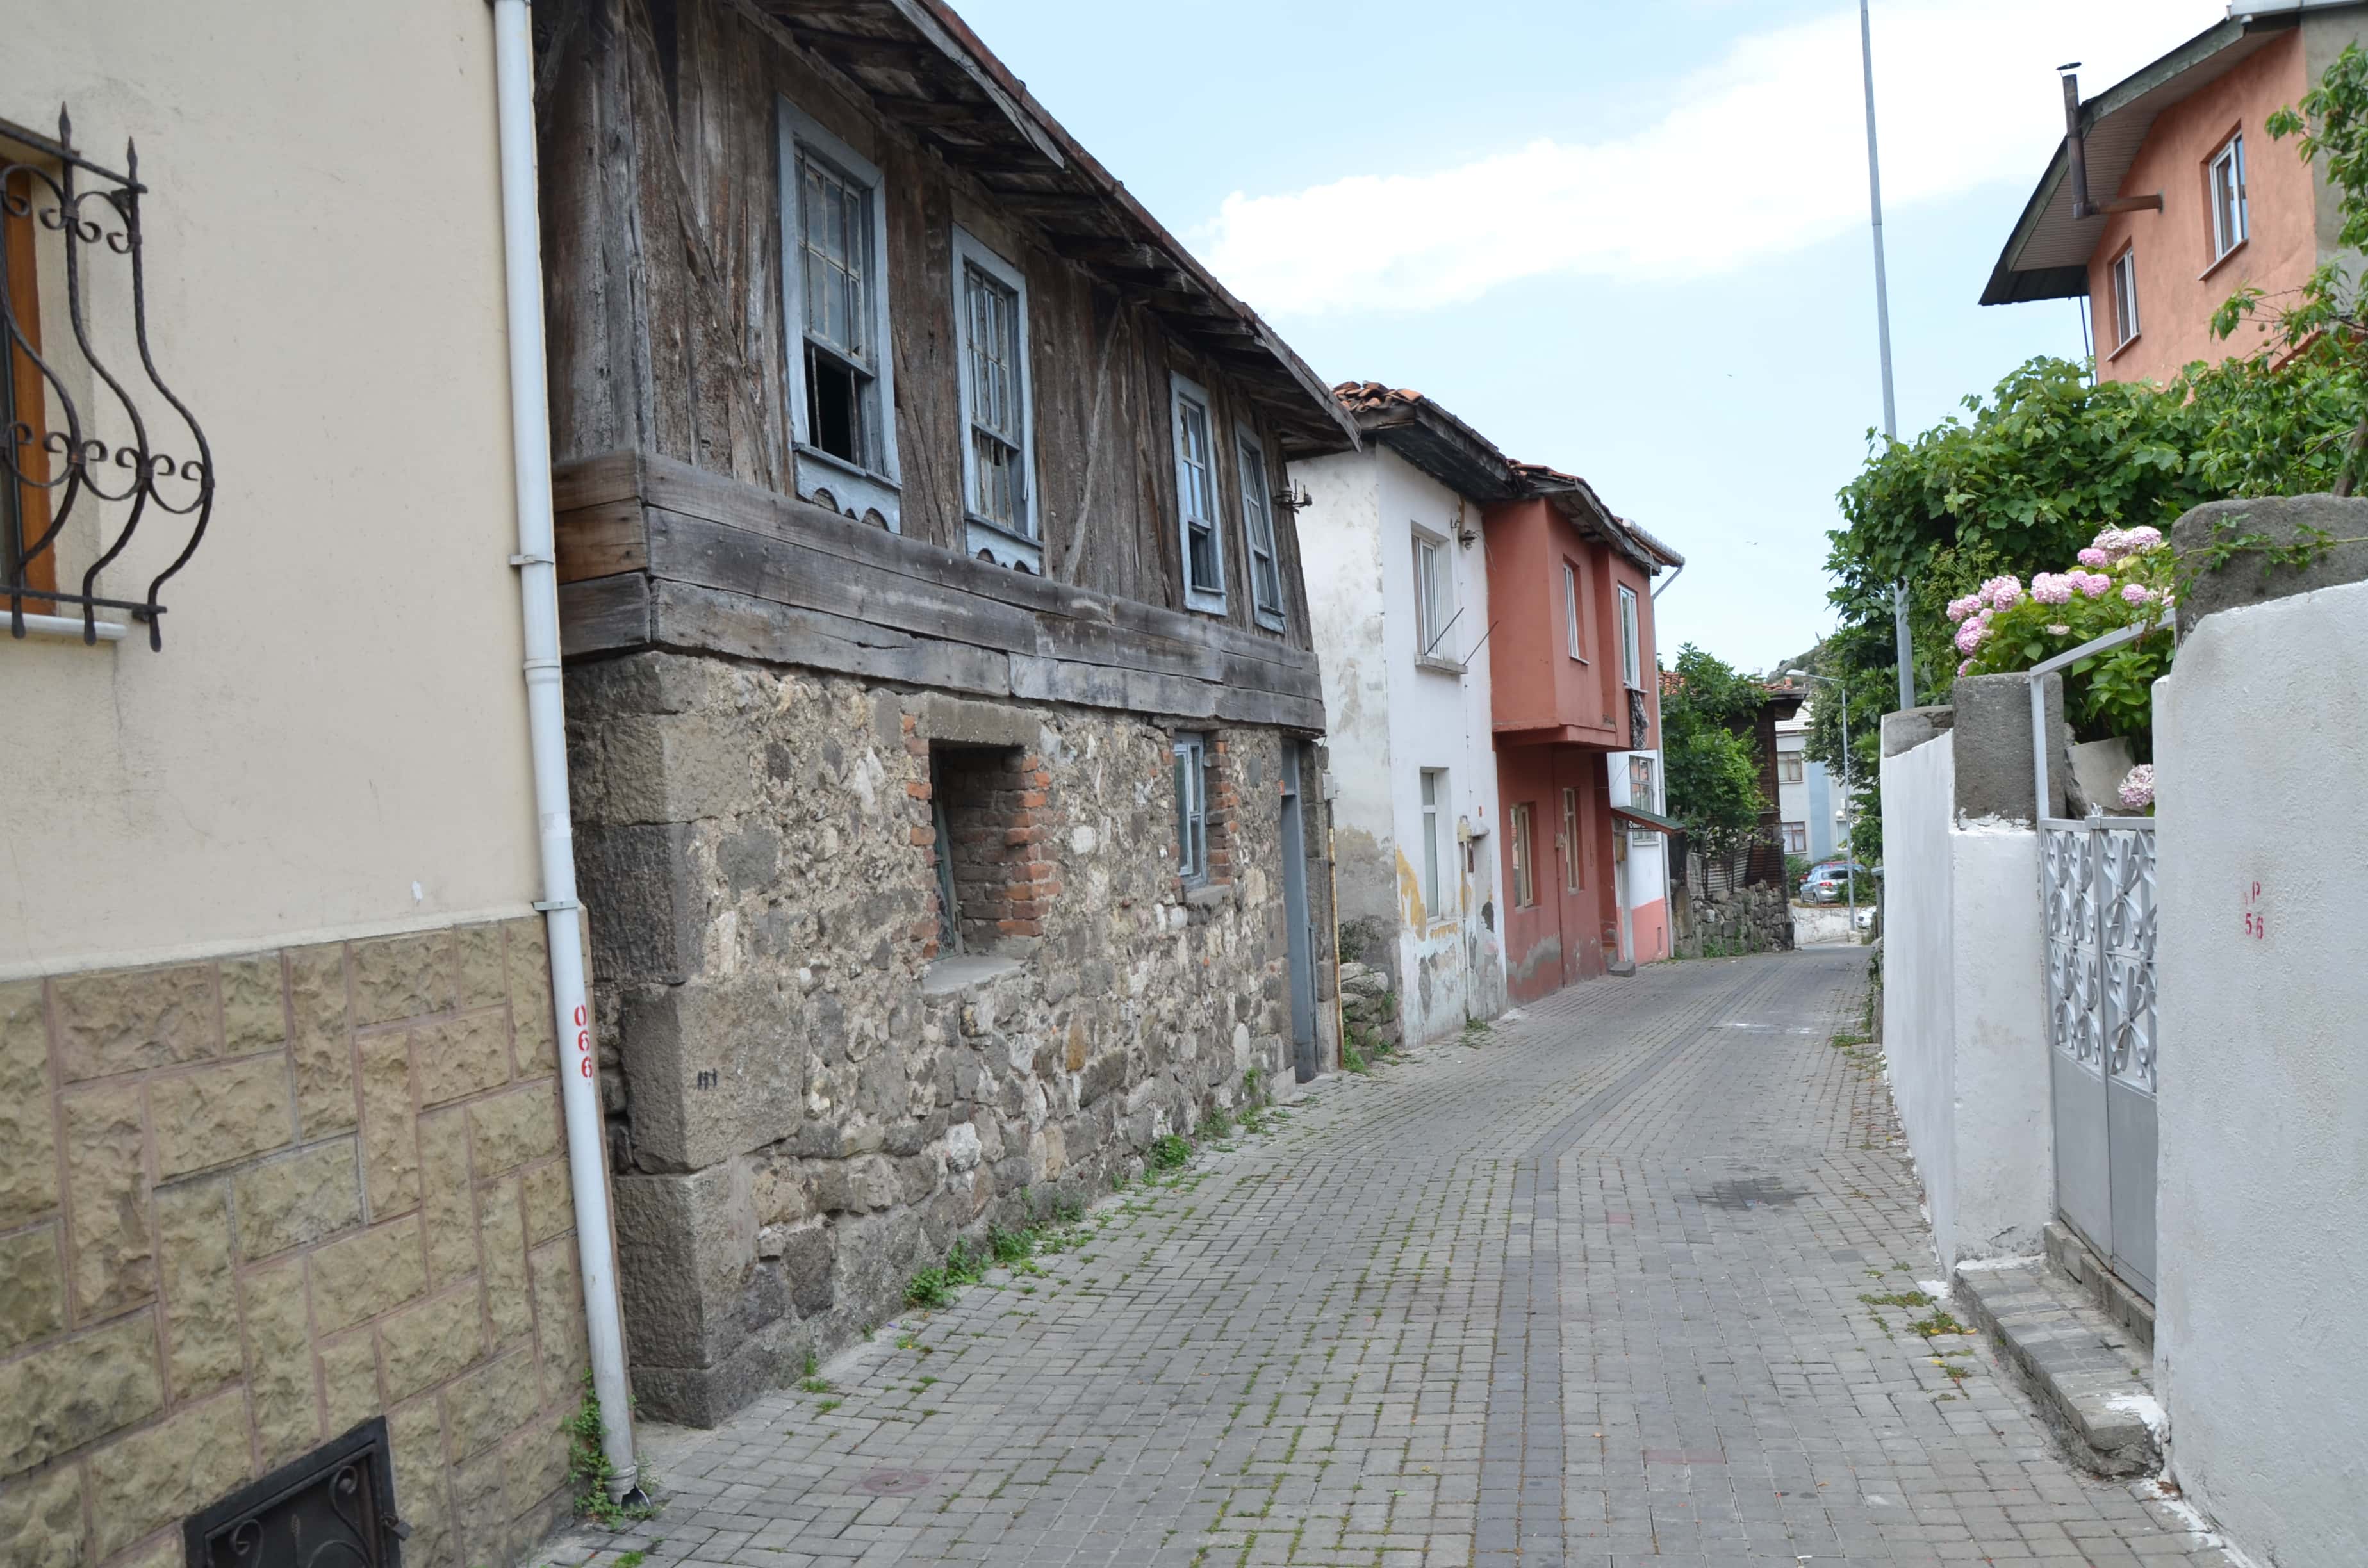 A street in Kale in Amasra, Turkey